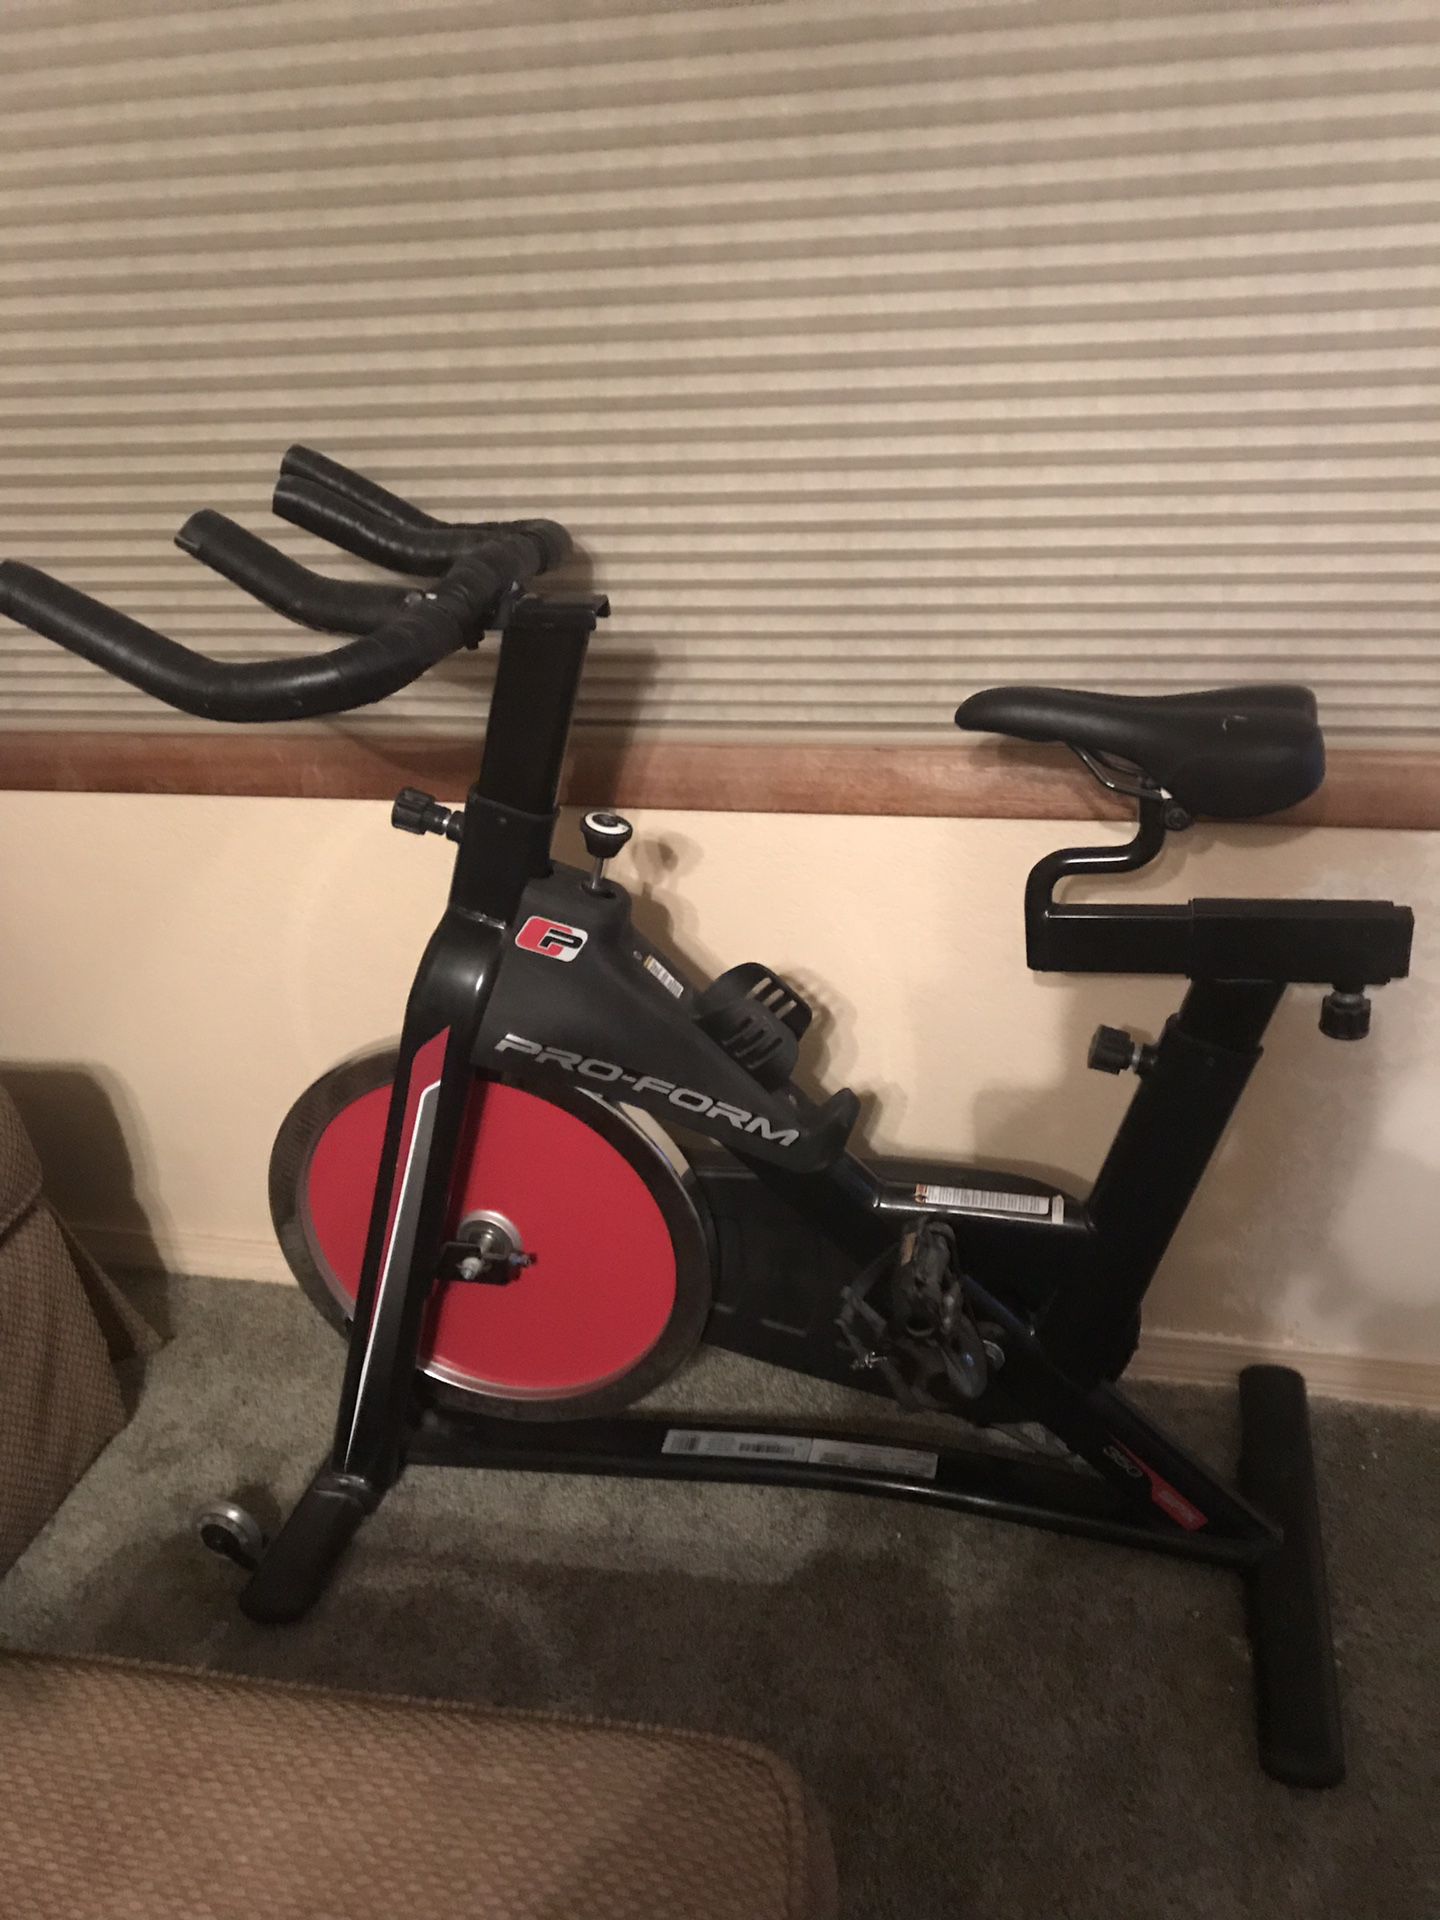 Pro-form spinner exercise bike